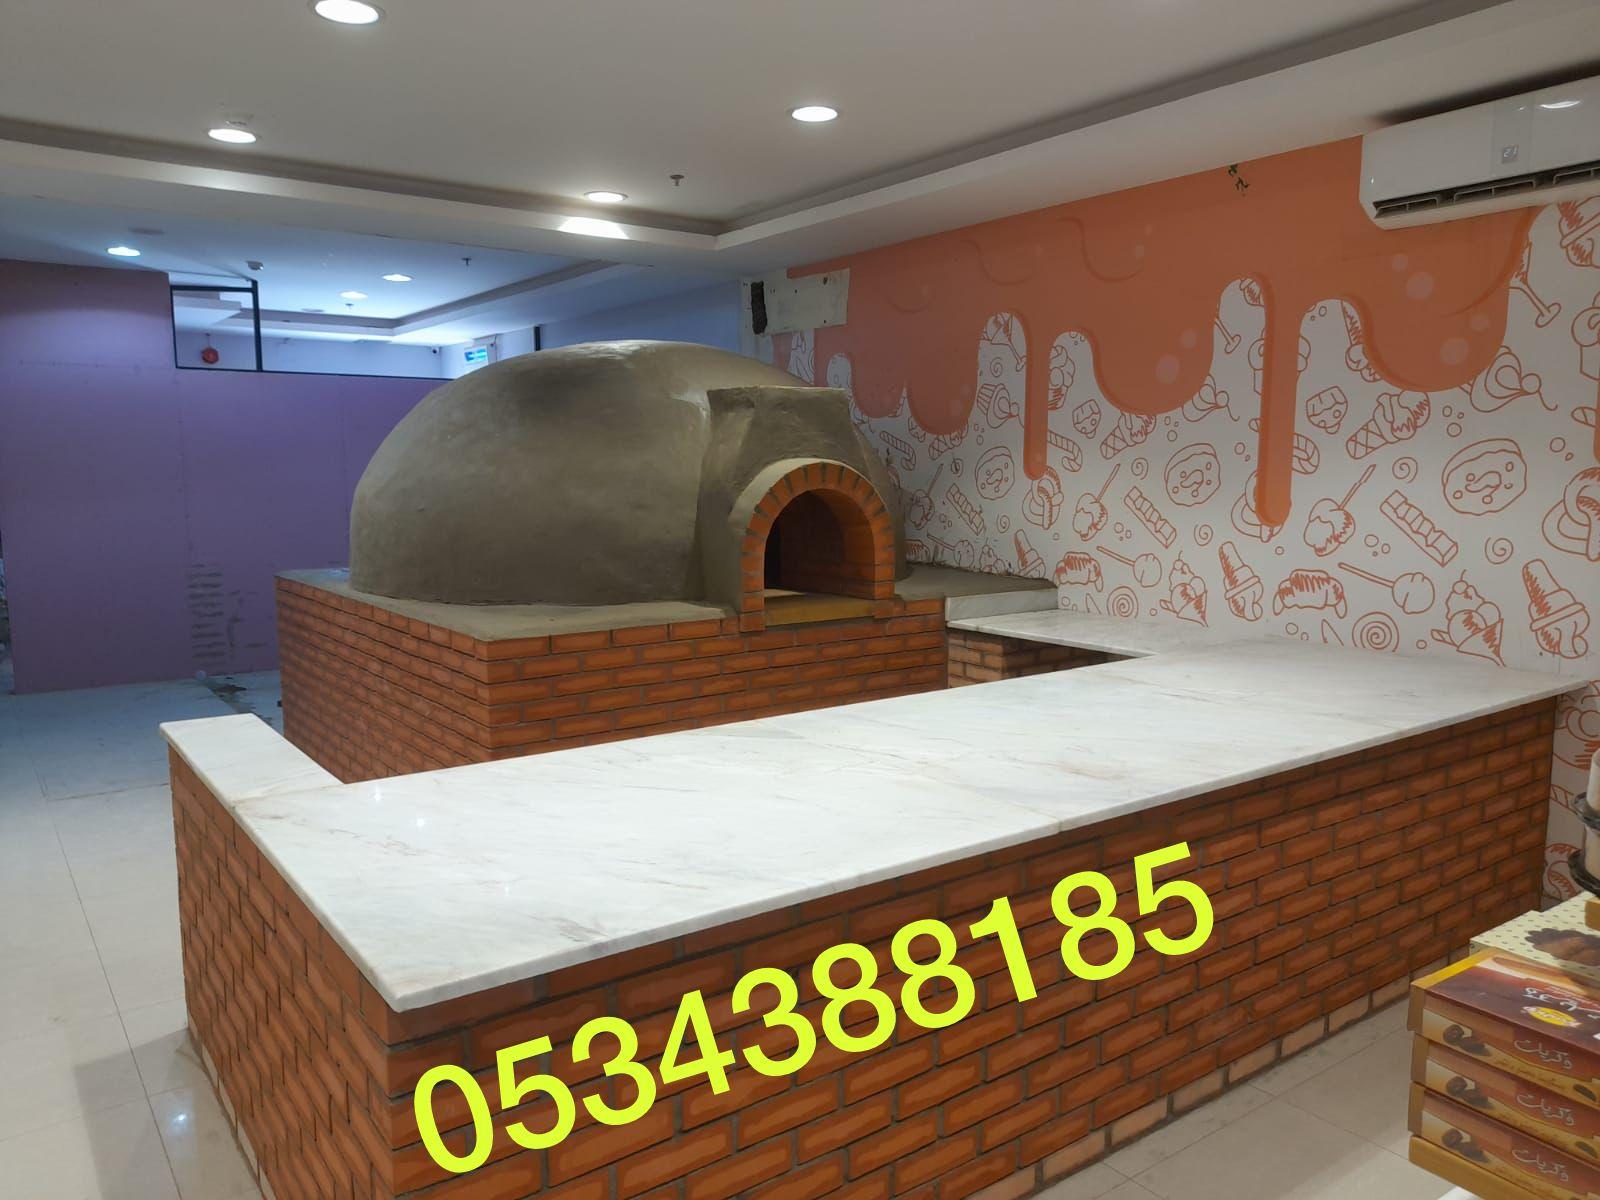 بناء شوايات حجرية للحدائق والمطاعم في الاحساء الهفوف, 0534388185 688827708